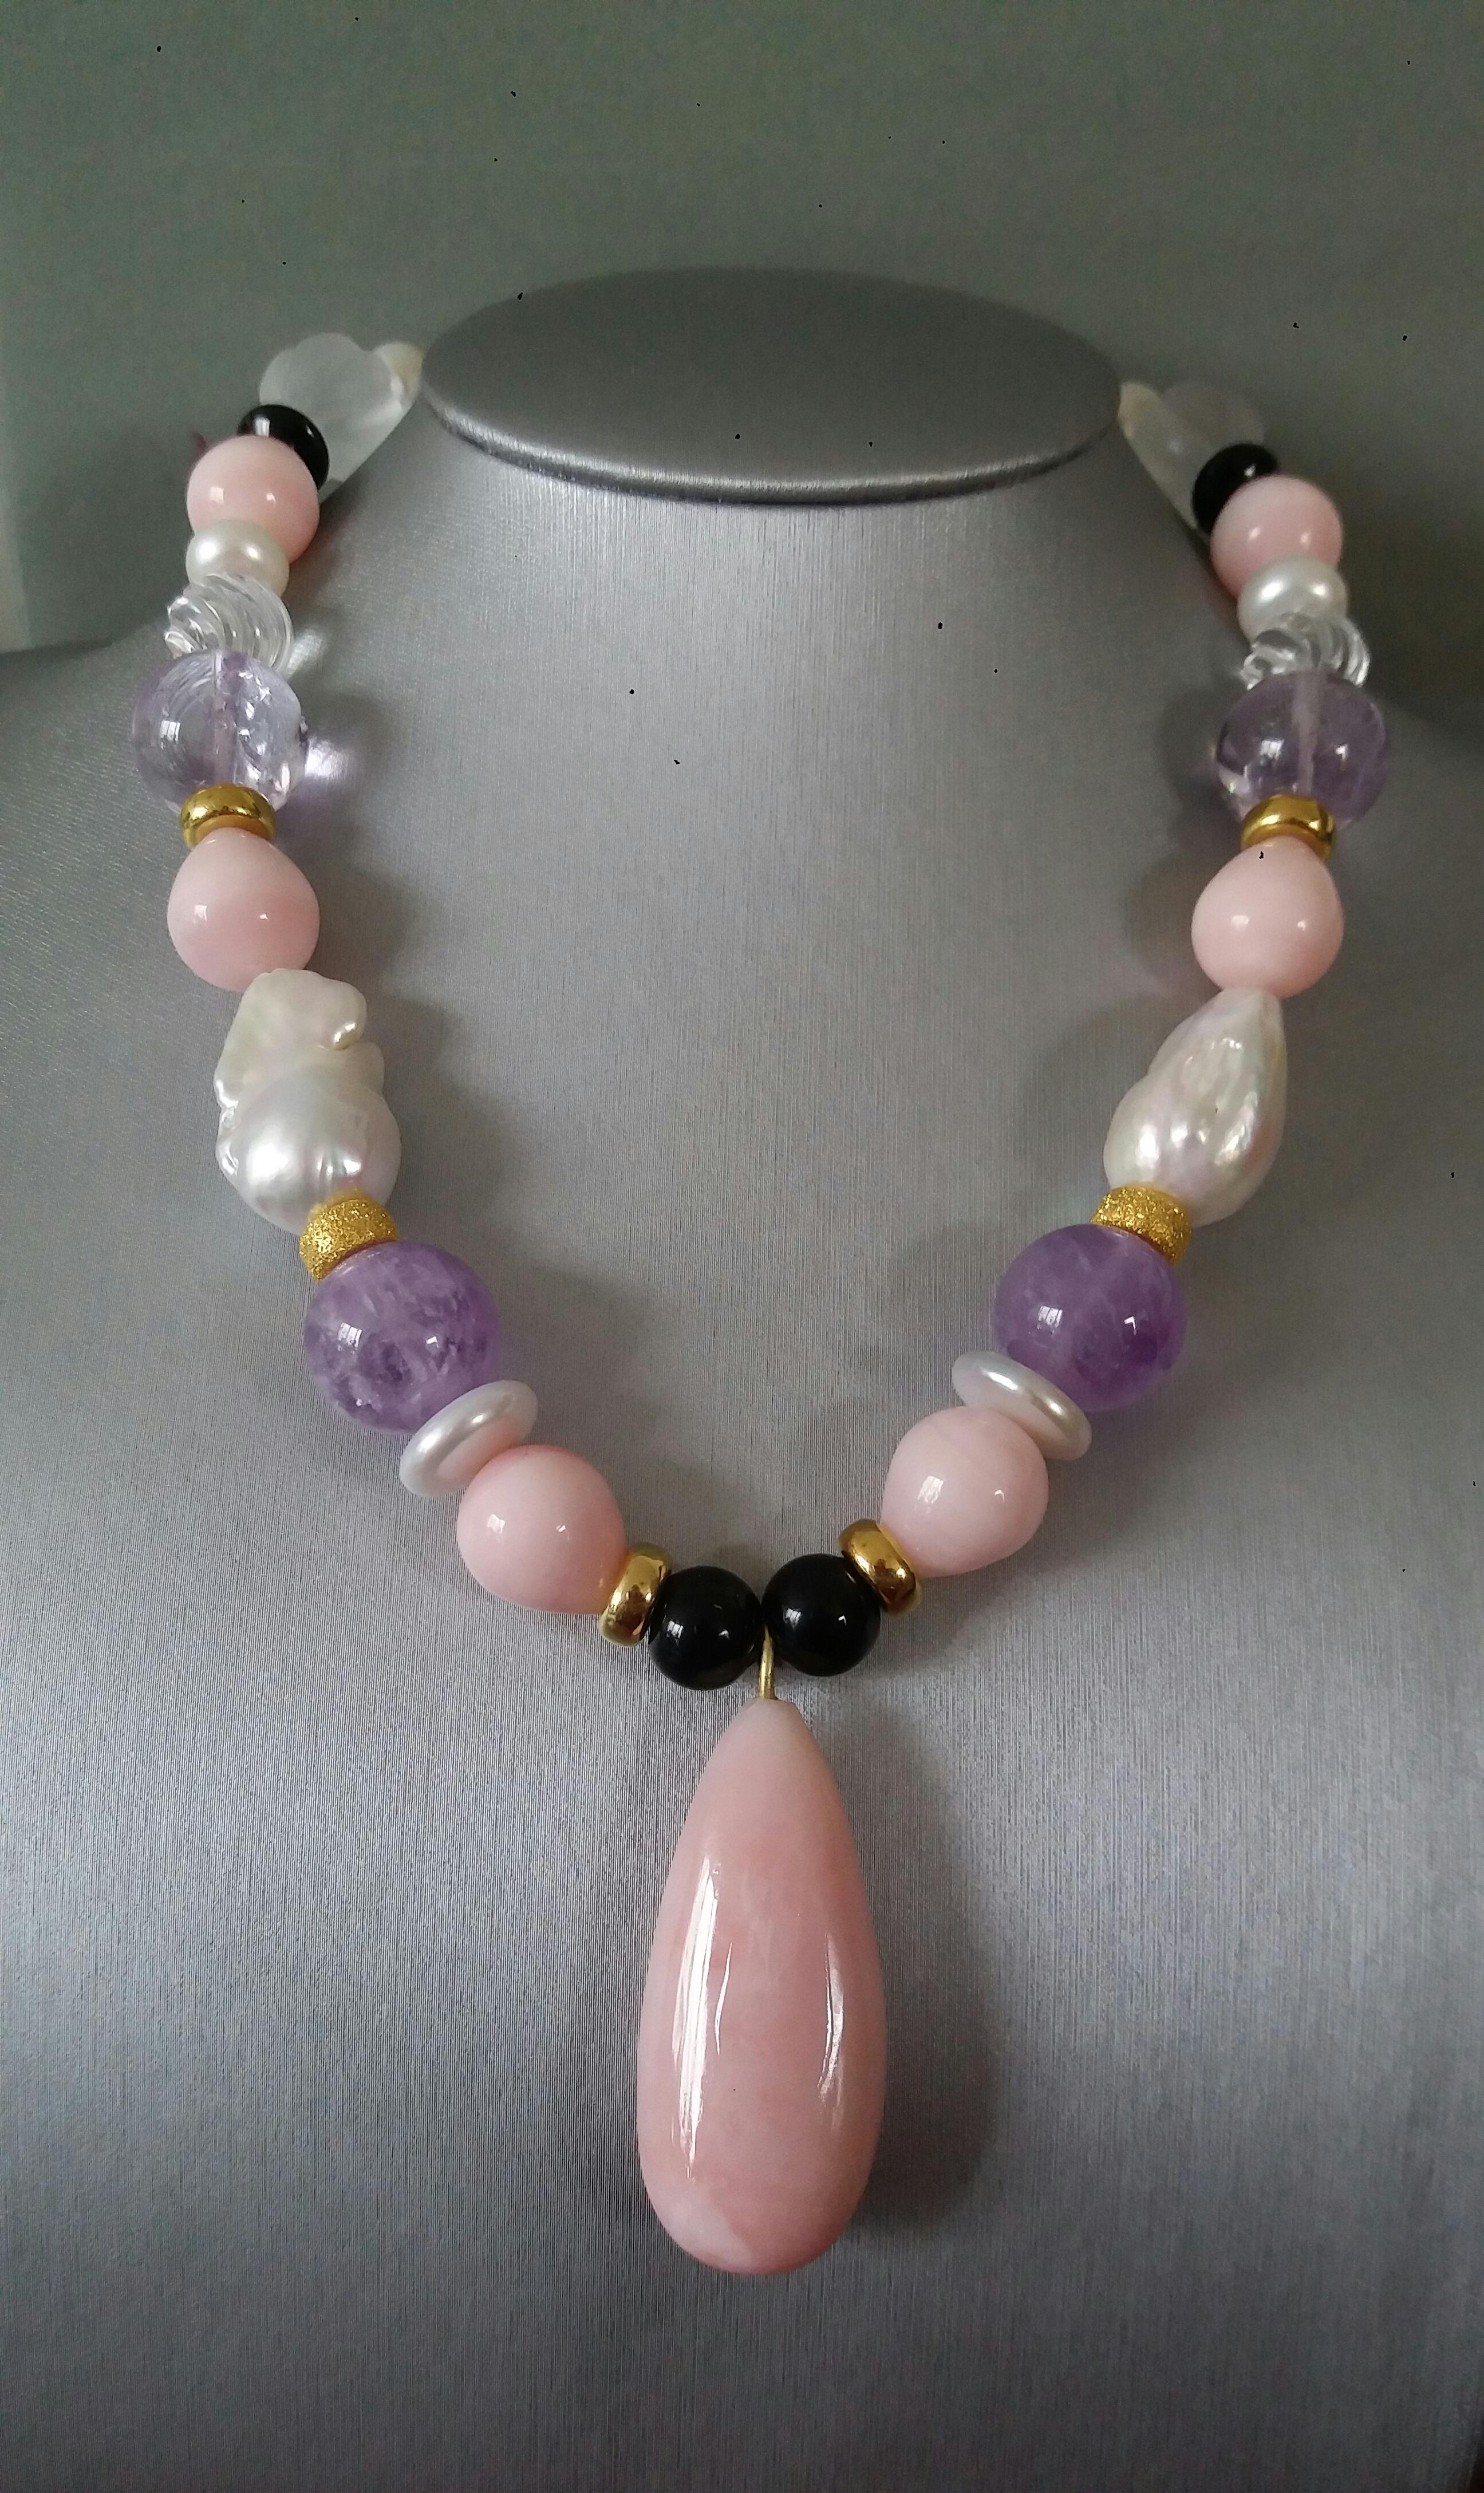 Collier unique et élégant composé de perles baroques de grande taille, d'une opale rose ronde en forme de goutte, de sphères d'améthyste de 16 mm, de perles de quartz gravées, de perles d'onyx noir de 16 mm, d'éléments en or jaune 14 kt, auxquels